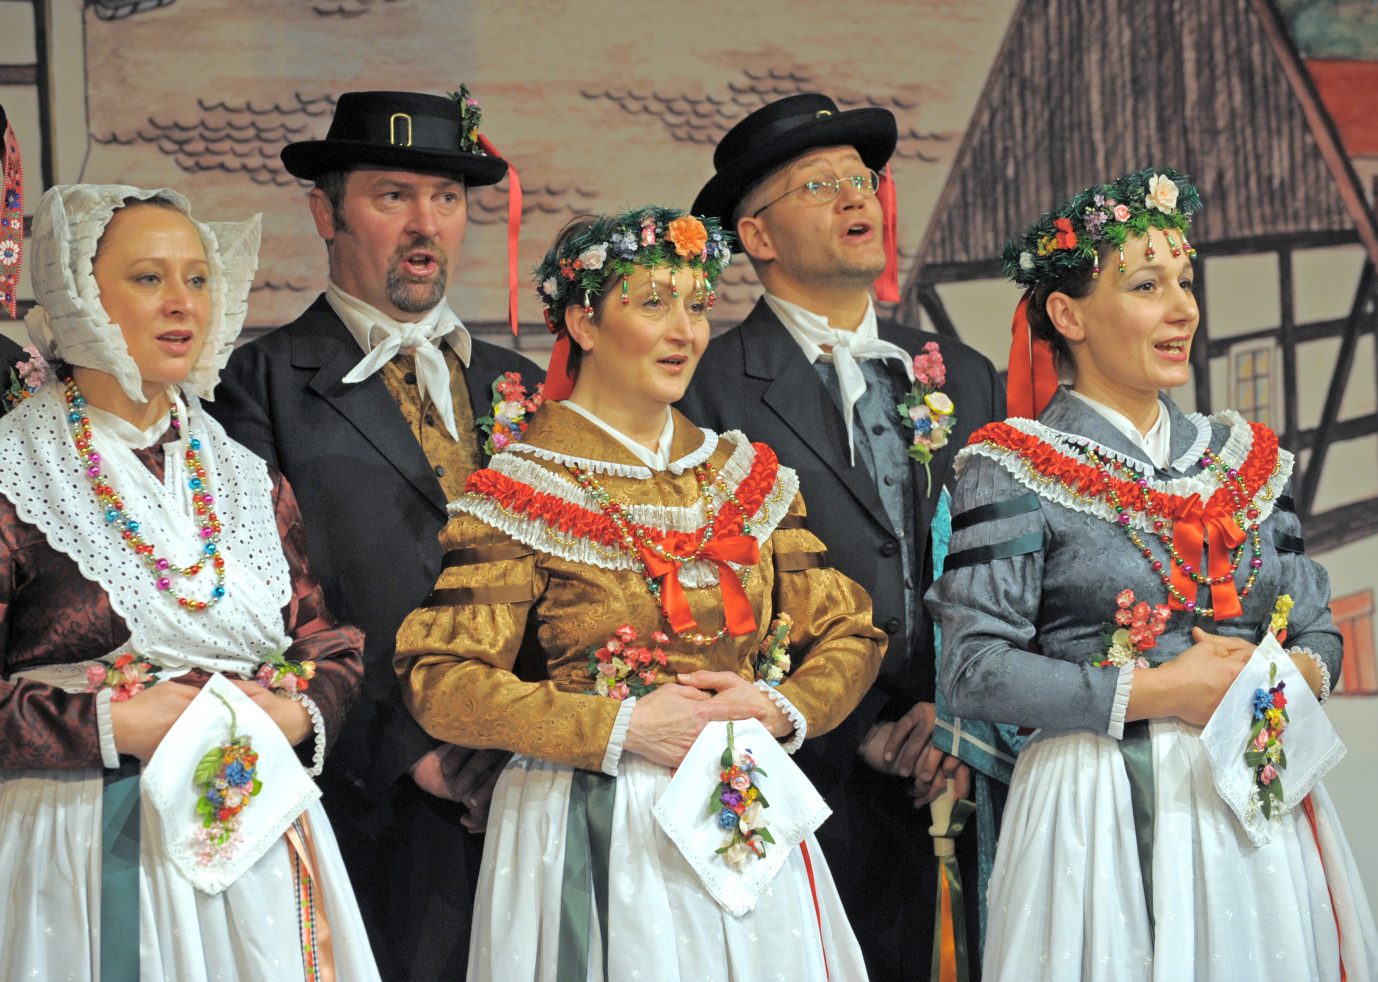 Angehörige der sorbischen Volksgruppe singen in ihrer Tracht: Künftig könnte die Hymne „Rjana Łužica“ um den Begriff „Frauen“ ergänzt werden